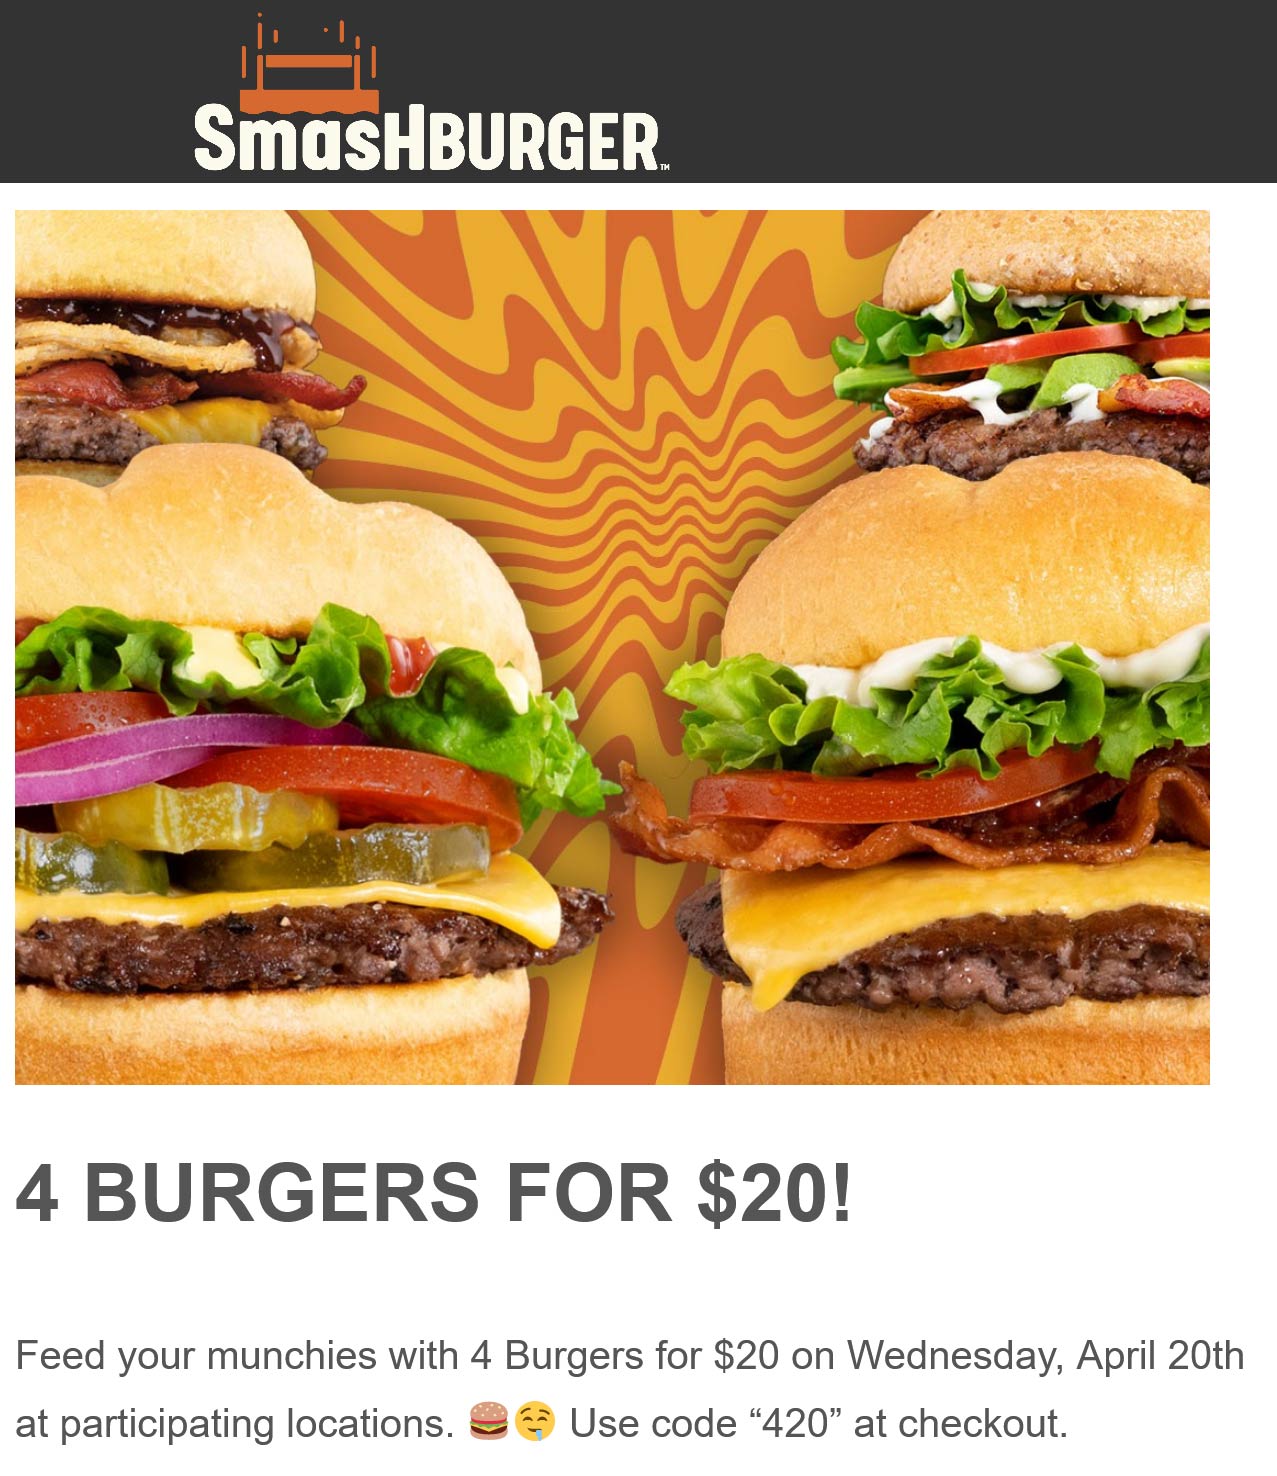 Smashburger restaurants Coupon  4 cheeseburgers for $20 today at Smashburger restaurants via promo code 420 #smashburger 